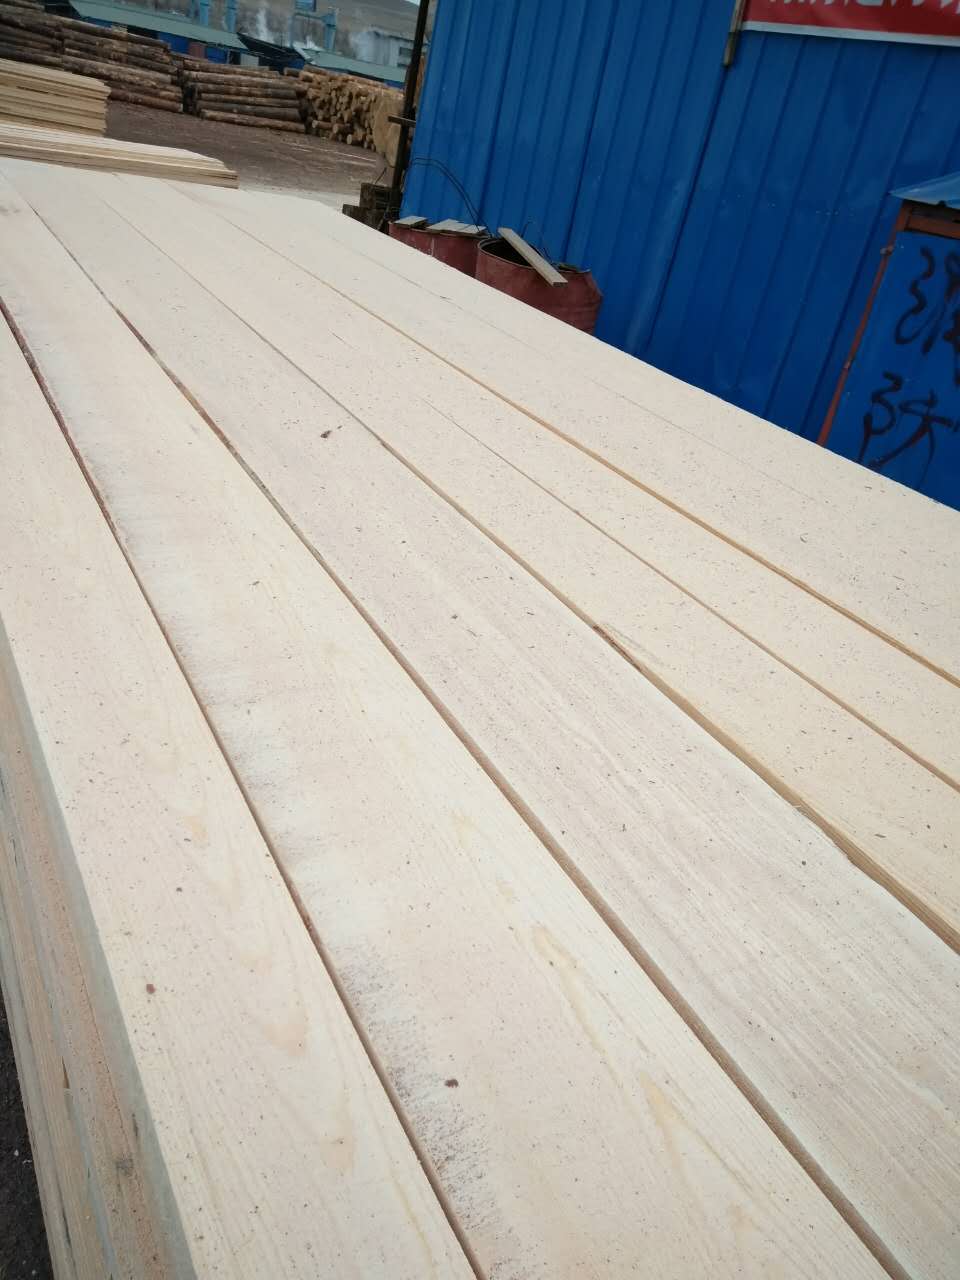 满洲里俄罗斯樟子松板材 防腐木 无节板材 满洲里志立木制品贸易有限公司